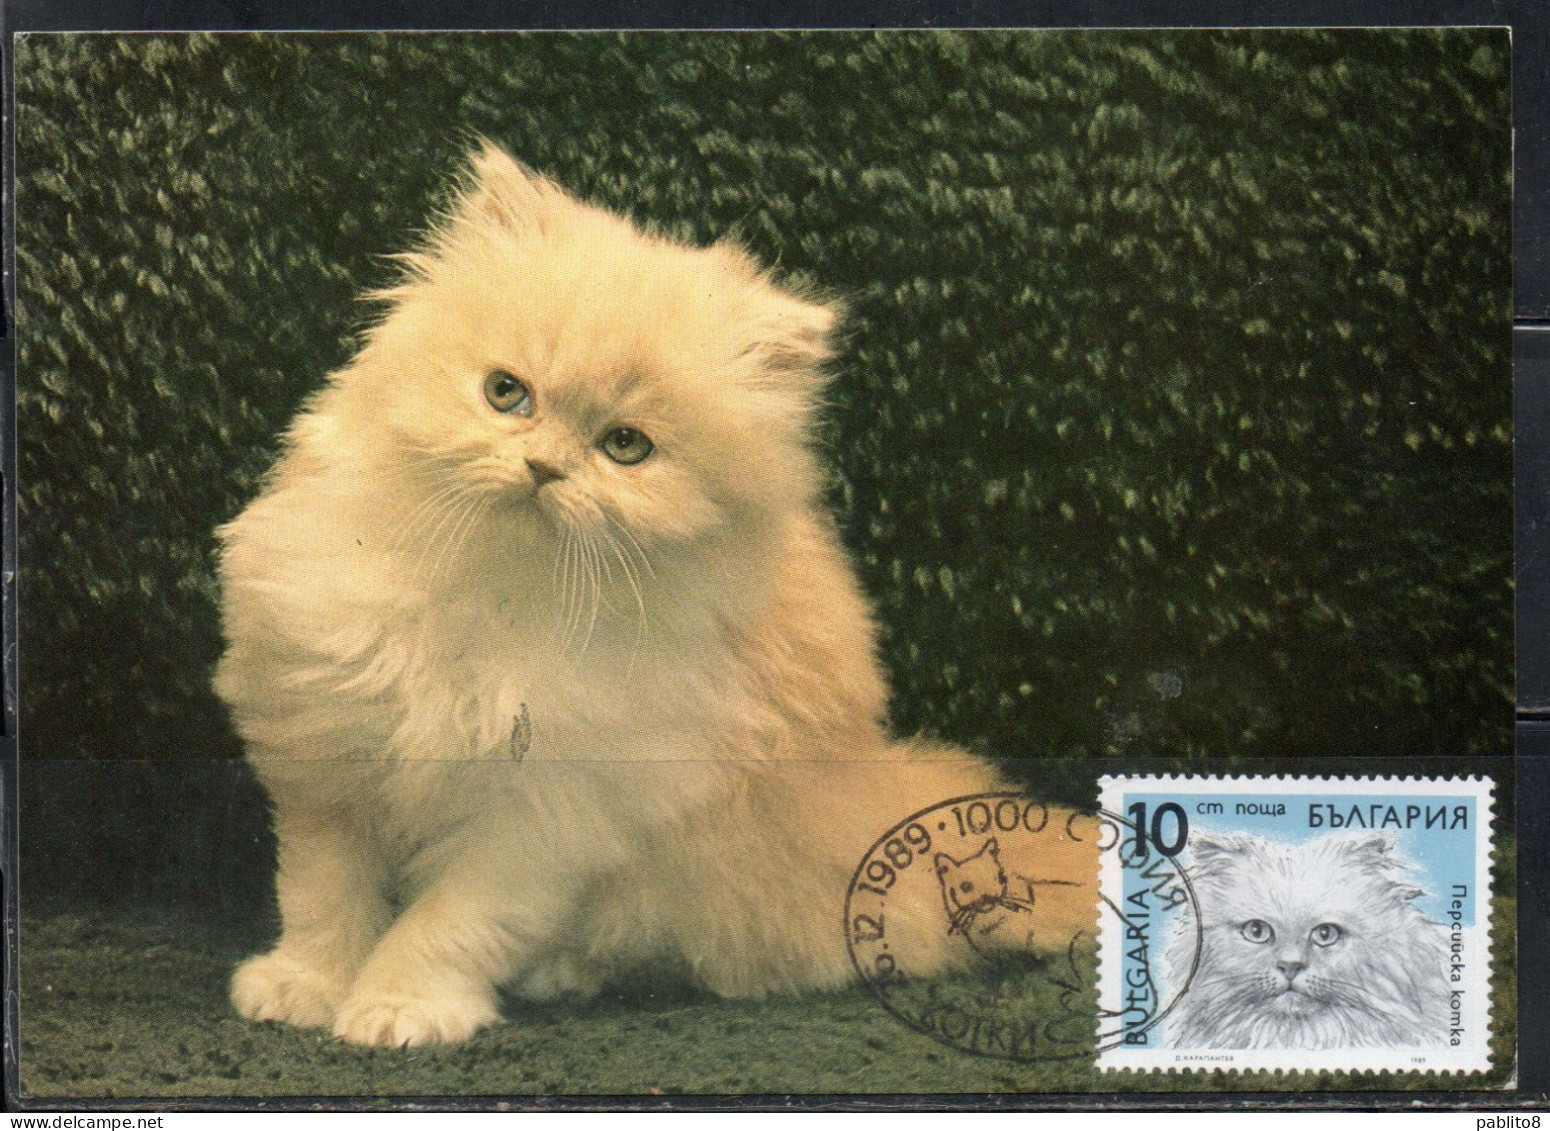 BULGARIA BULGARIE BULGARIEN 1989 CATS FAUNA HIMALAYAN CAT 10s MAXI MAXIMUM CARD - FDC